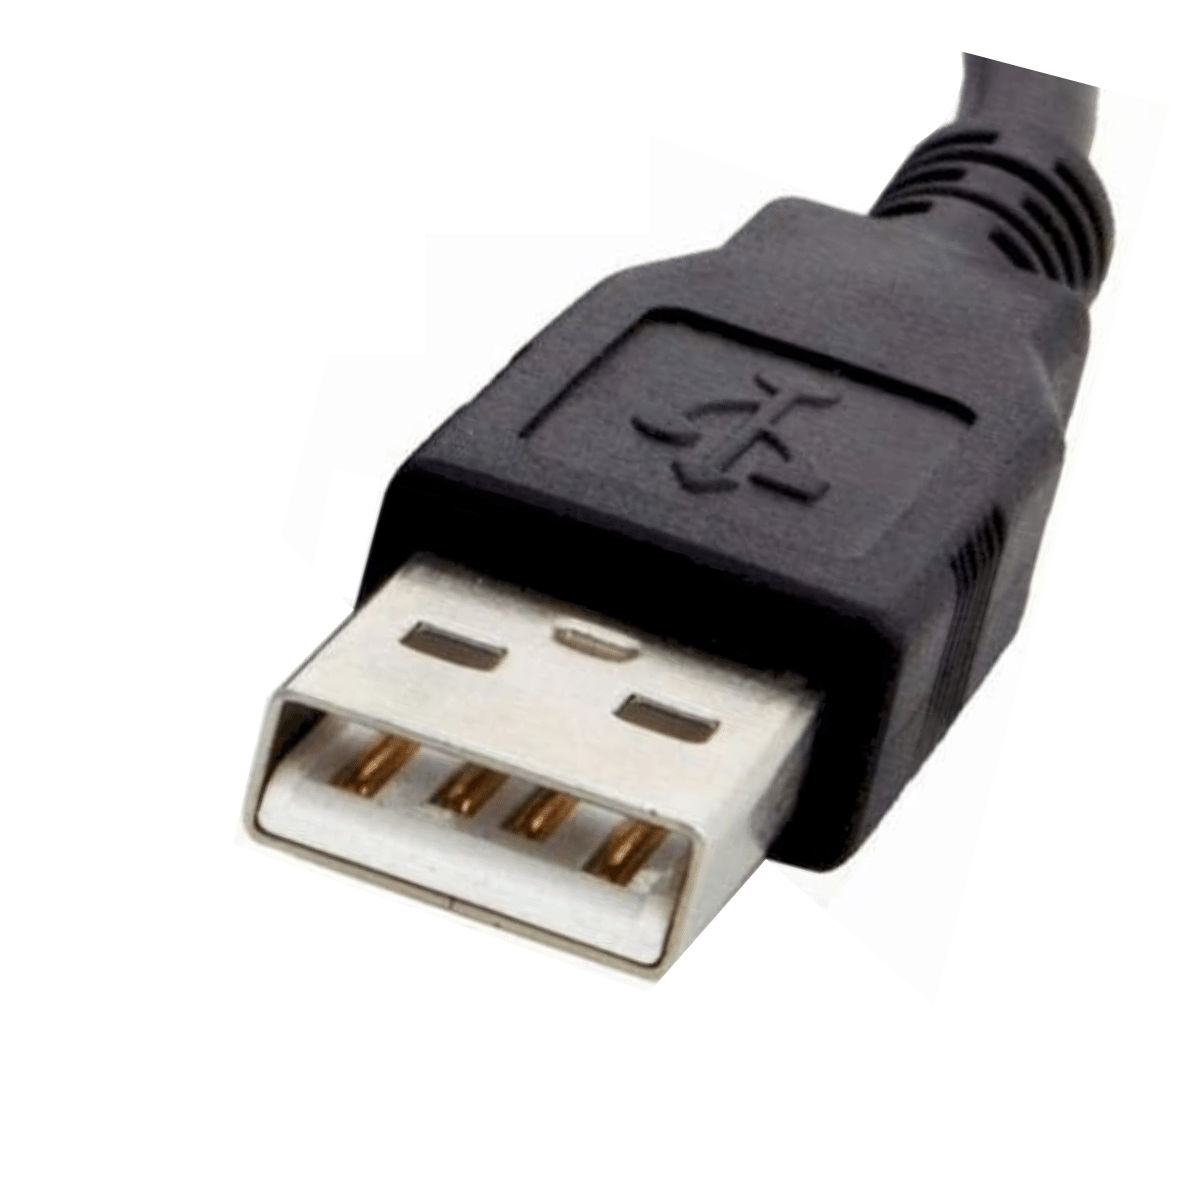 Cabo USB 2.0 Tipo AB - 1 Metro - Modelo Padrão para Arduino Uno, Impressora